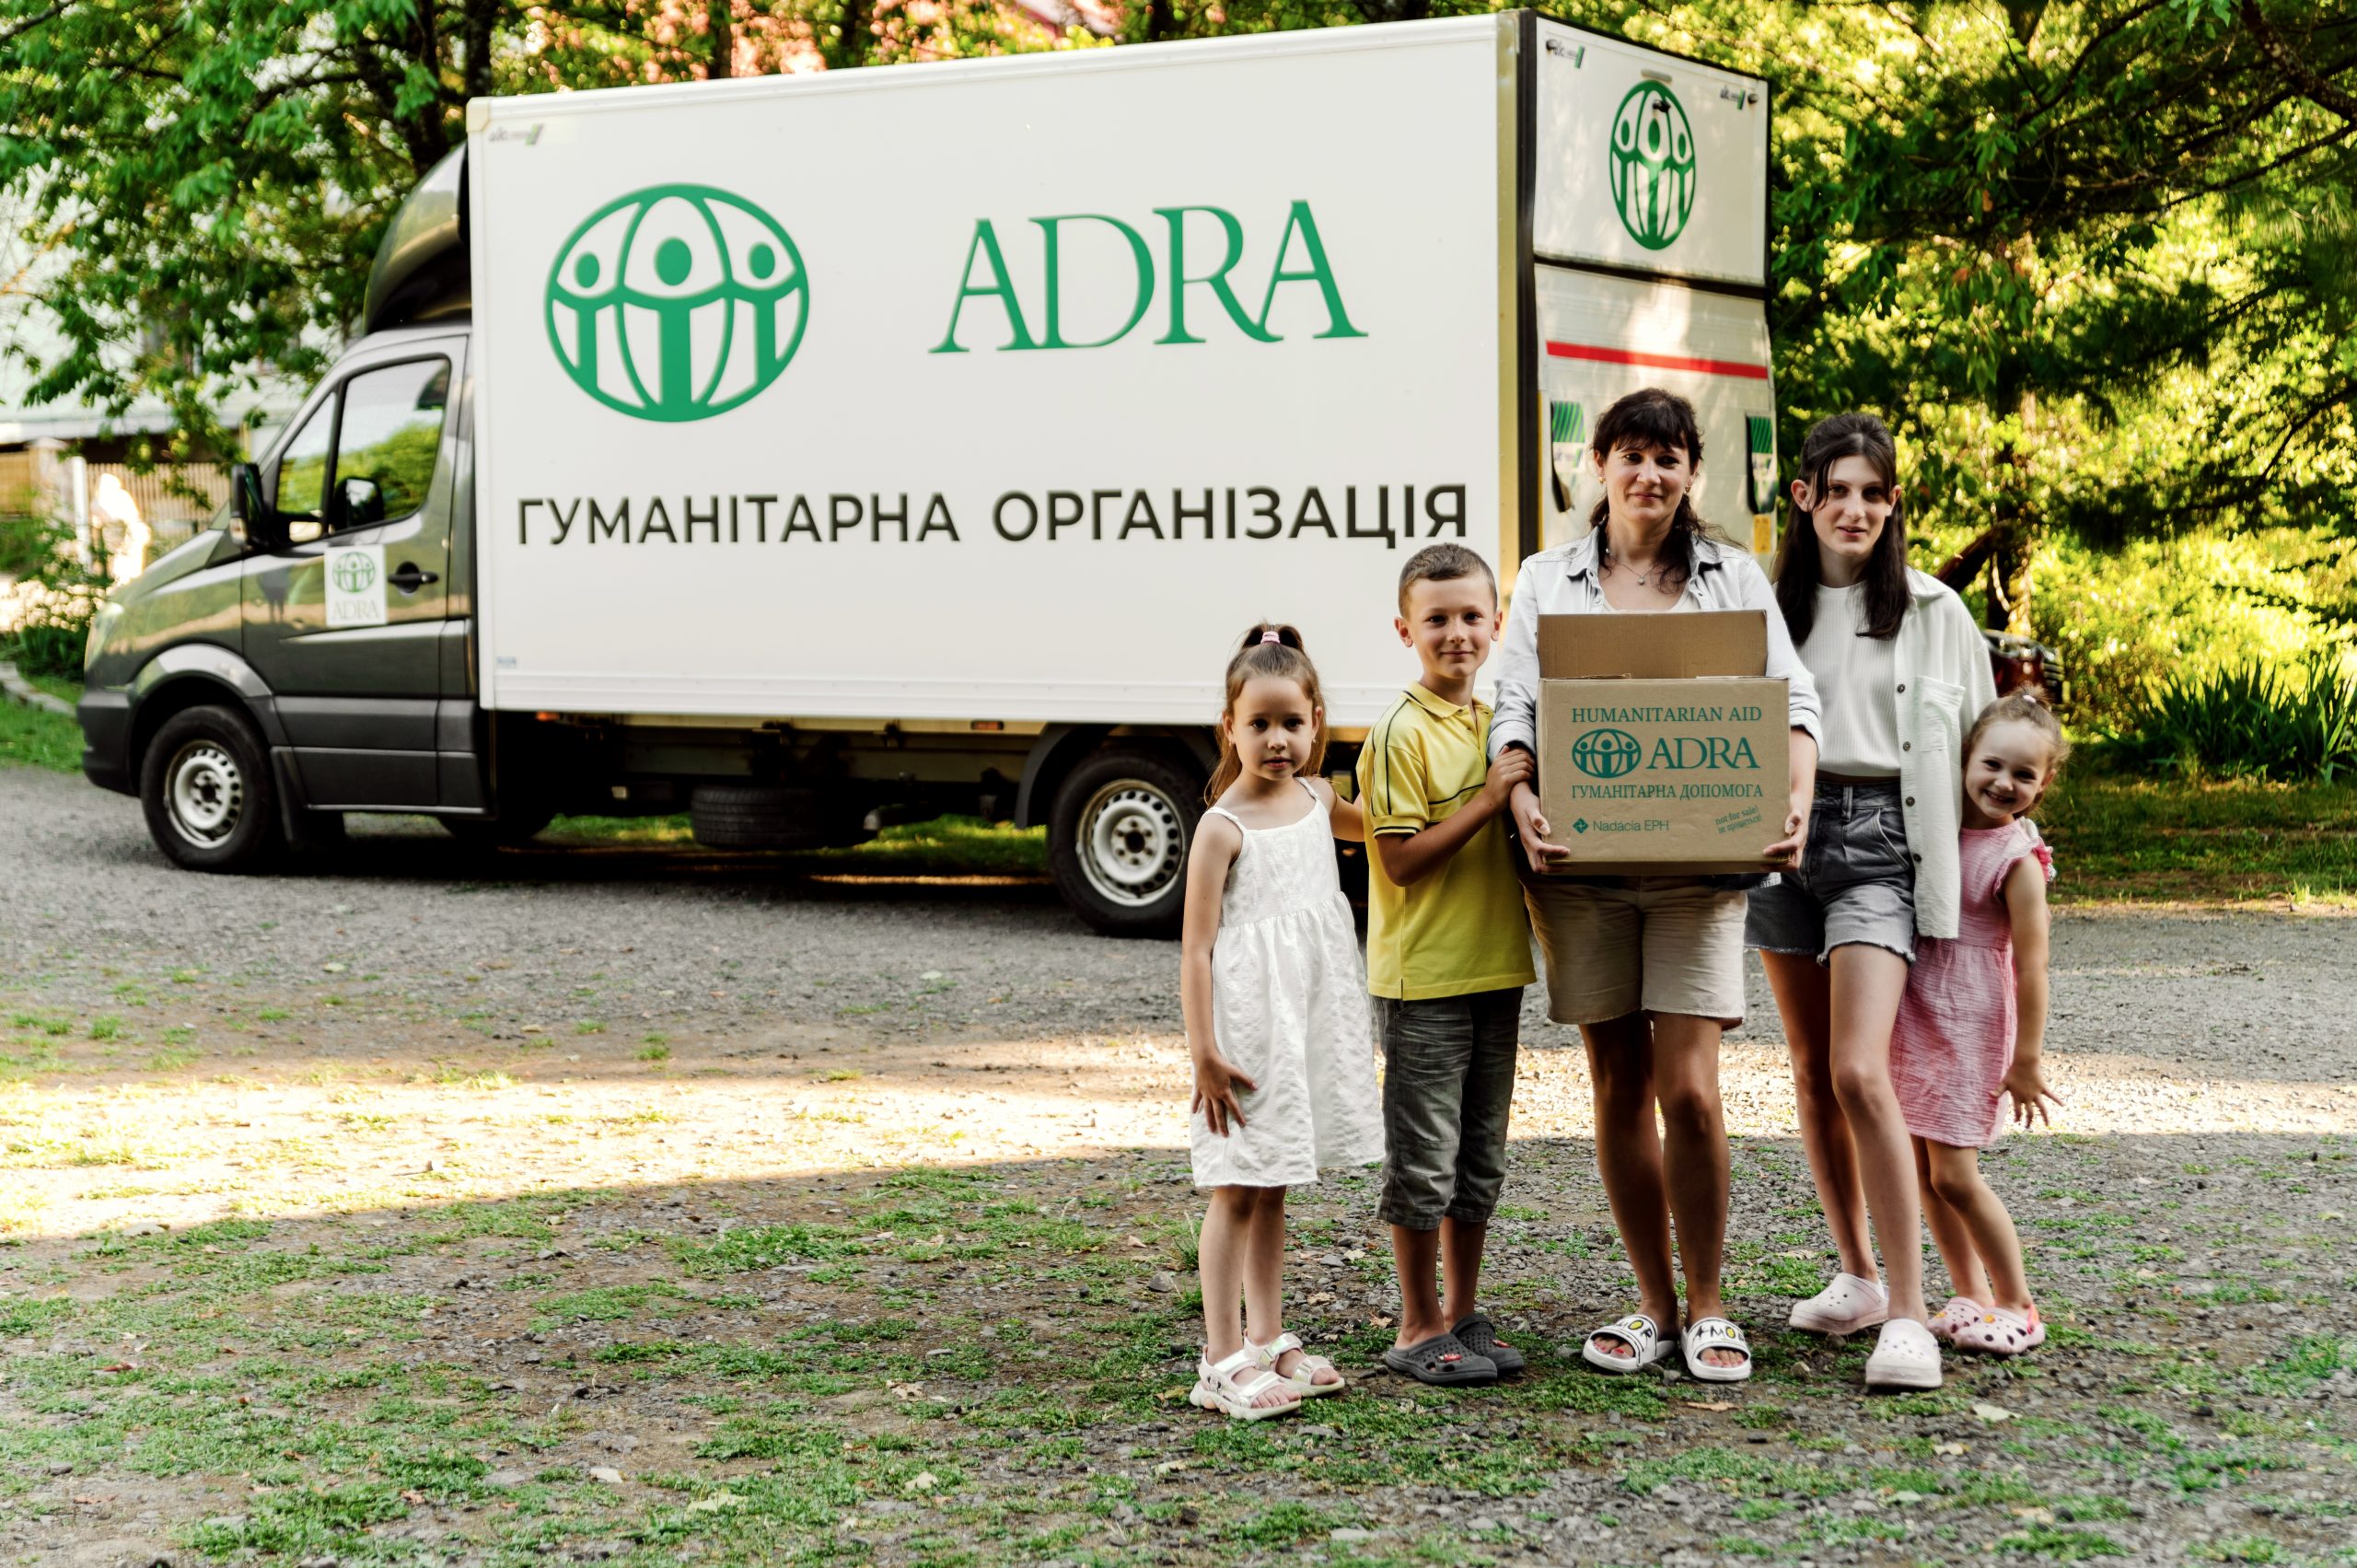 Понад сім мільйонів українців отримали допомогу завдяки християнам-благодійникам